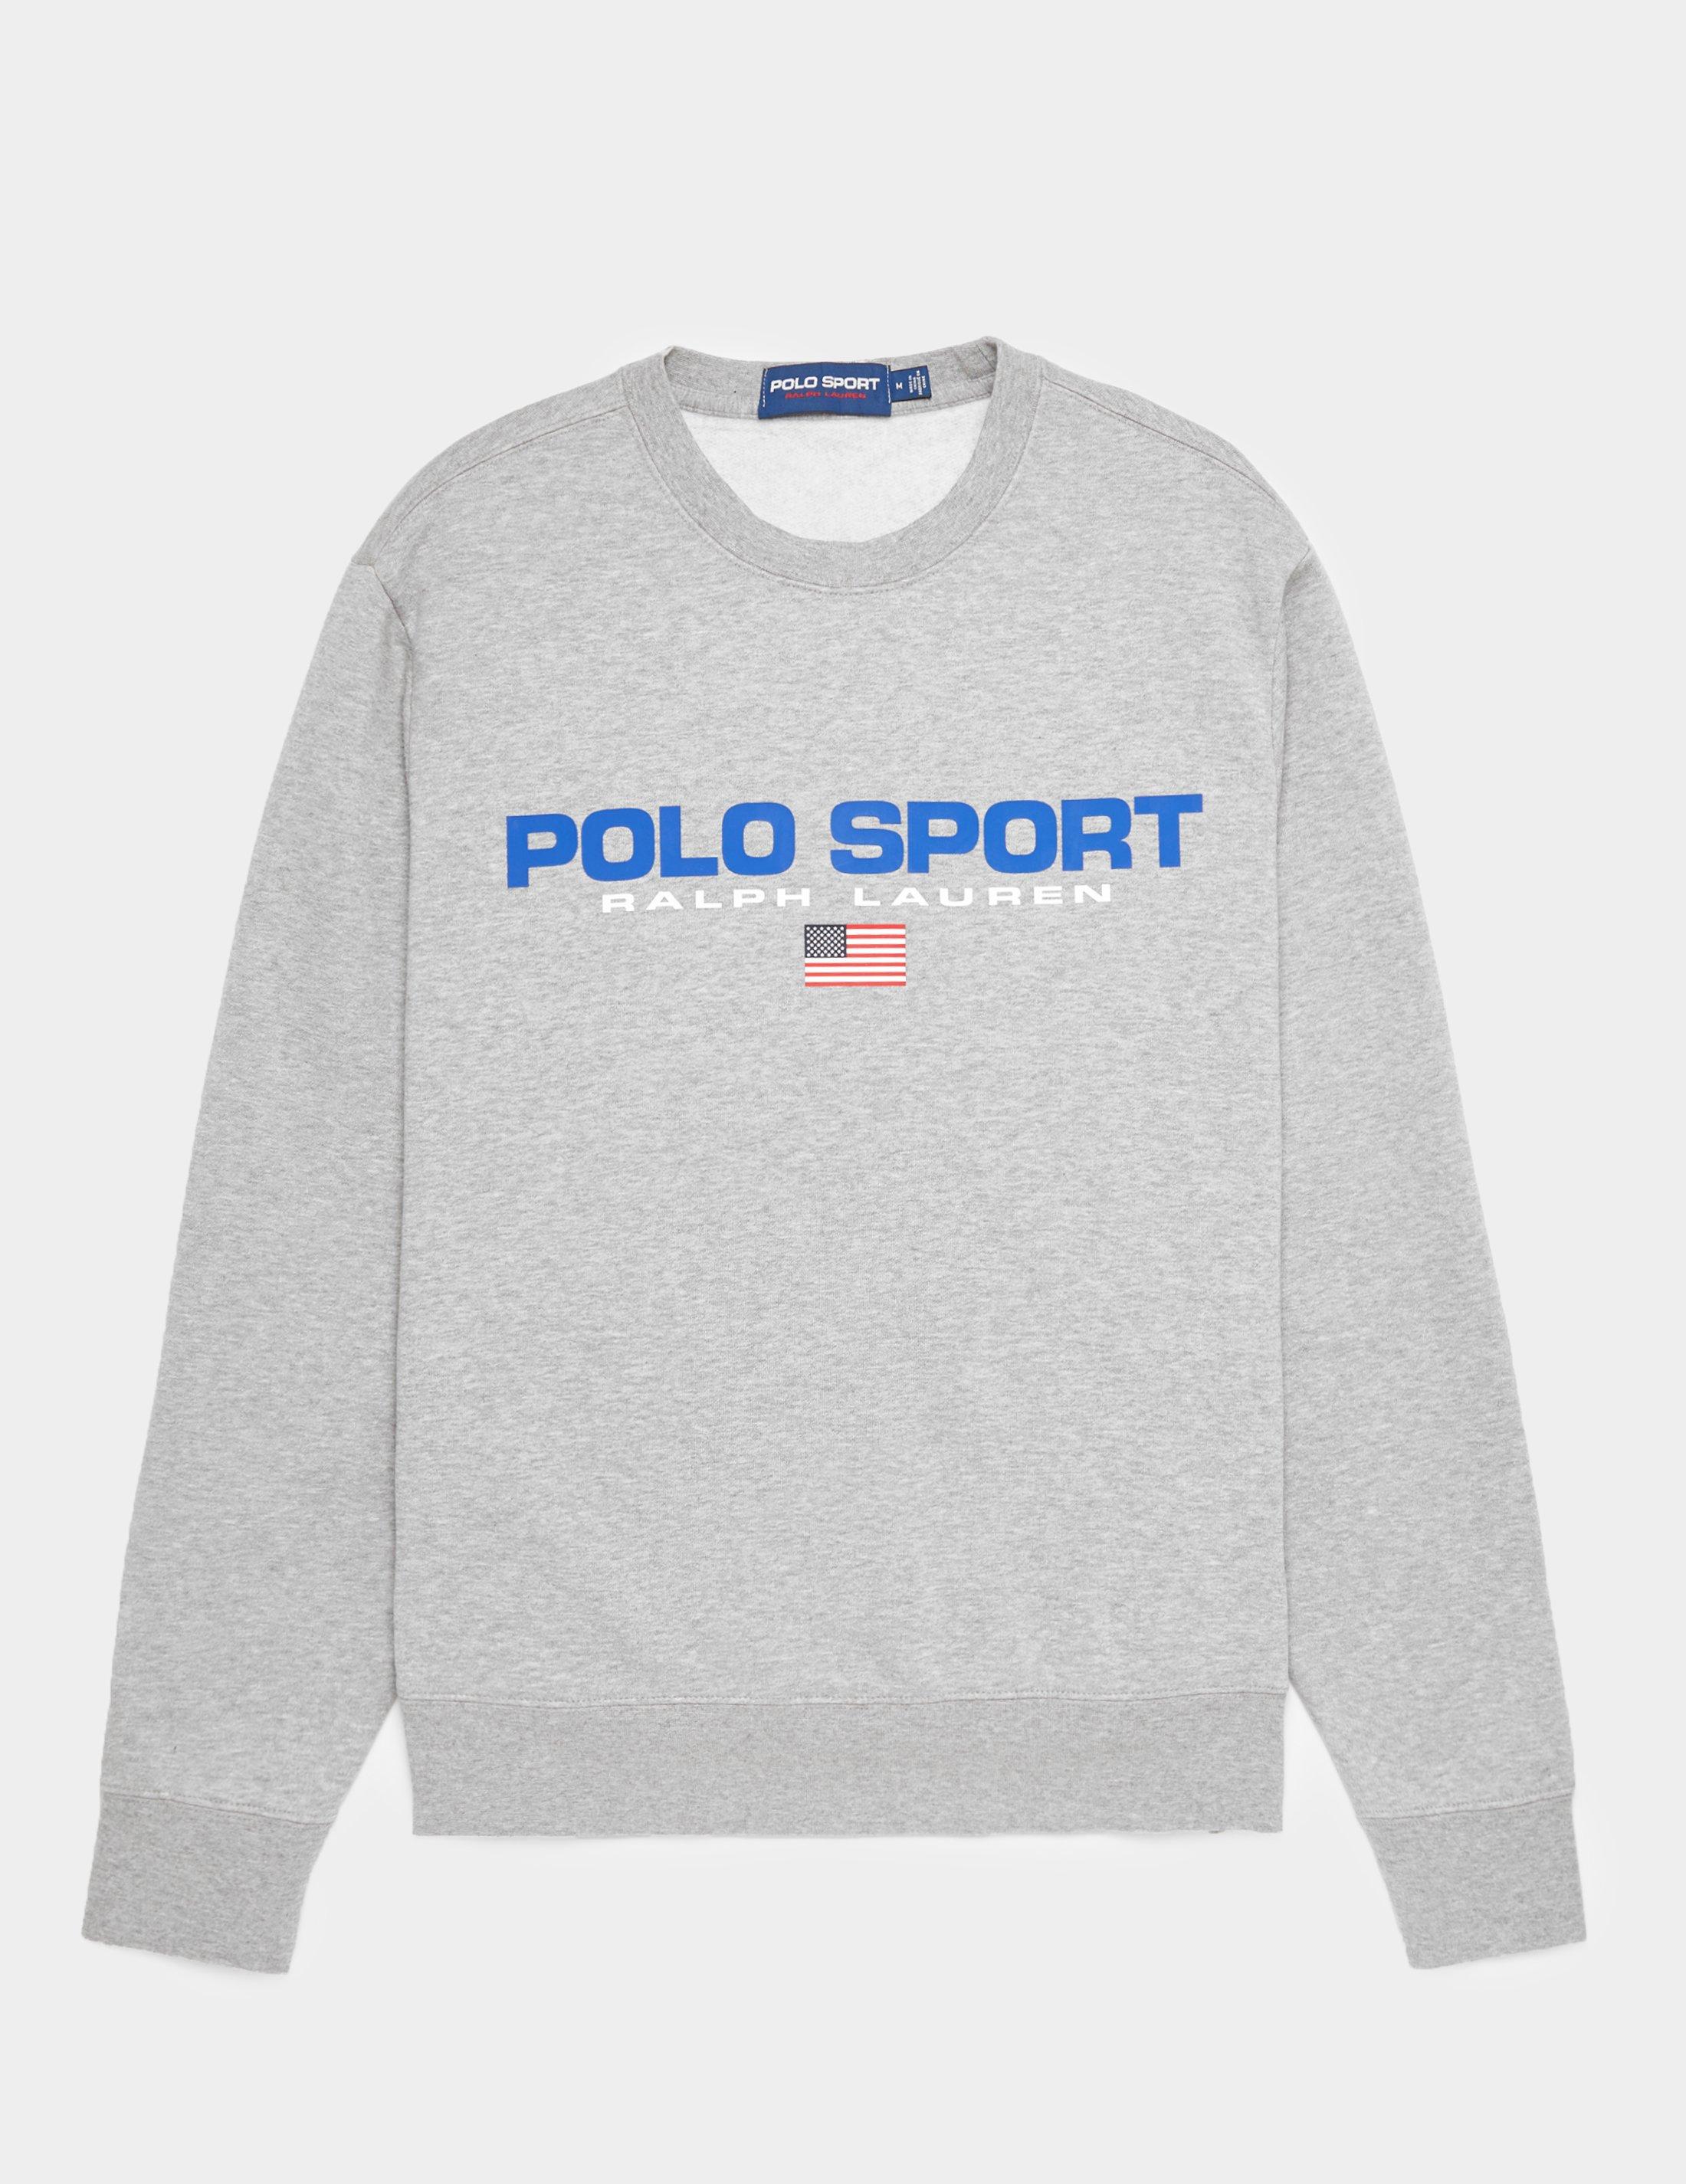 polo sport fleece sweatshirt